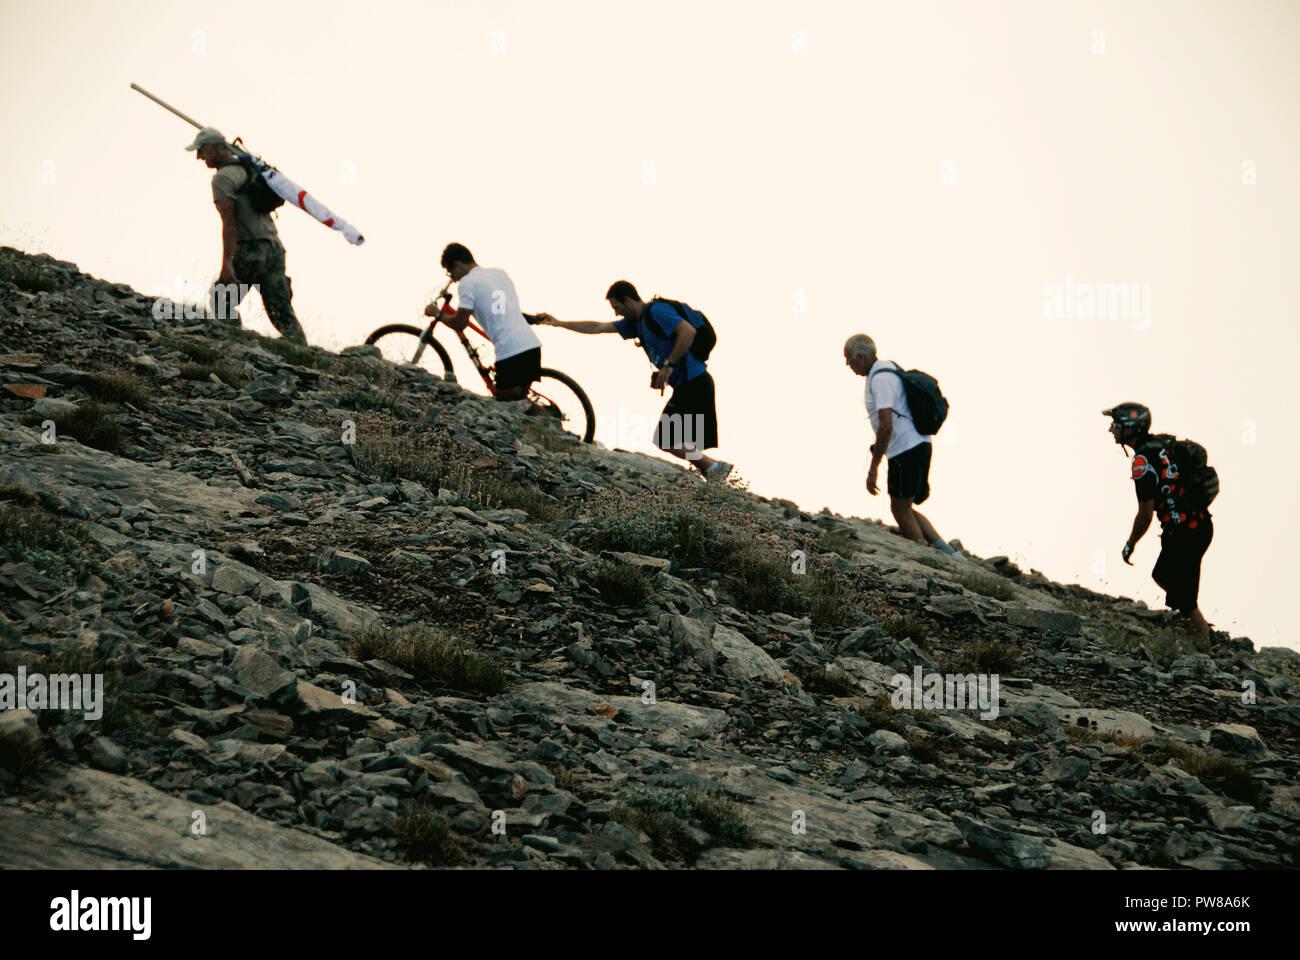 Griechenland, Berg Olymp, Kletterer auf dem Weg in der Nähe der Gipfel Mytikas (2,917 m. Höhe), auf dem Weg der E4 Europäischer Fernwanderweg, Jul. Stockfoto